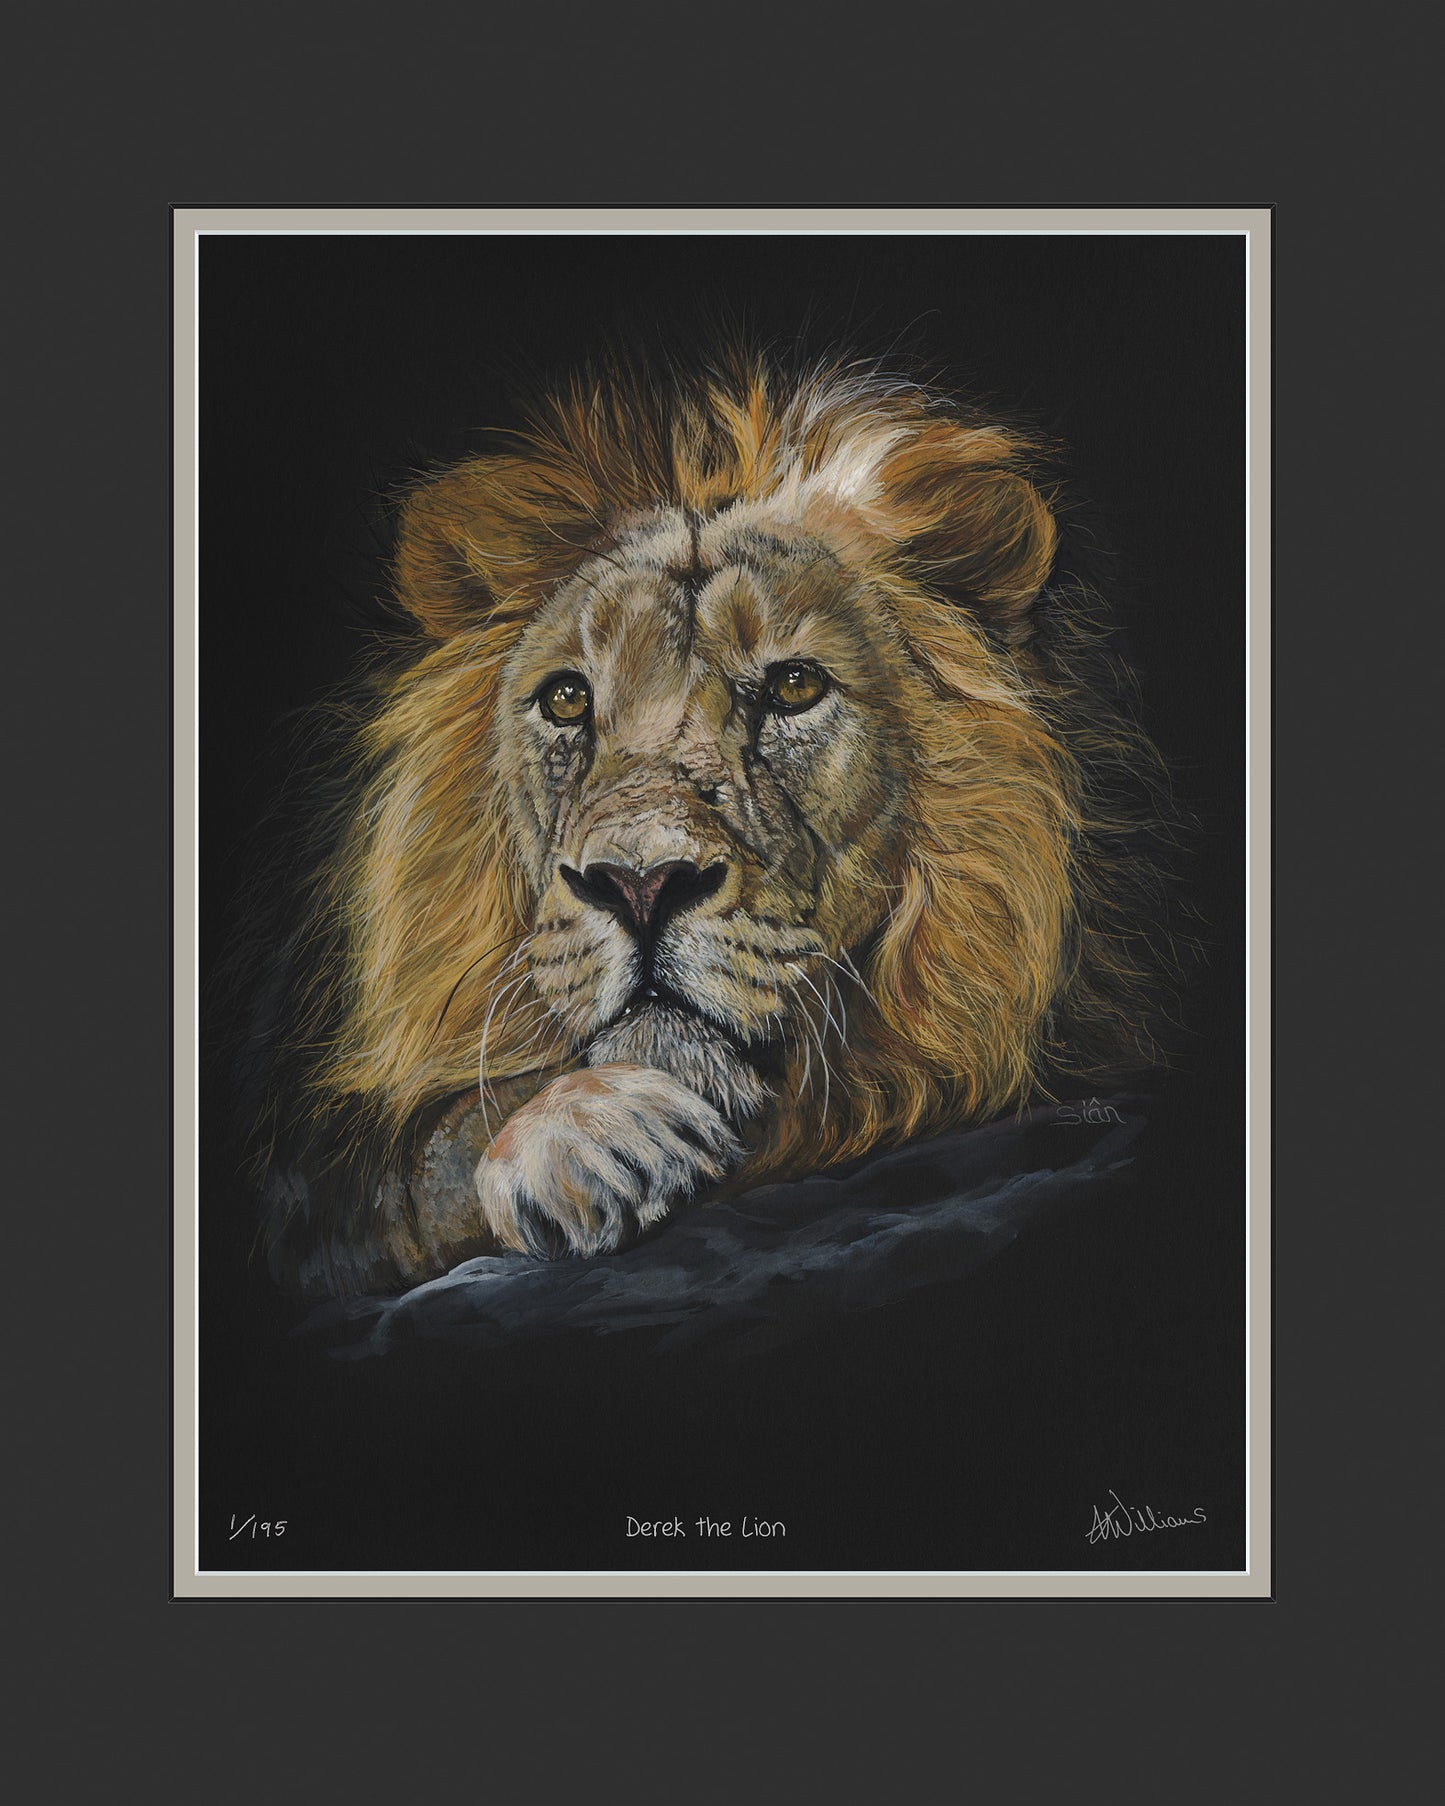 Derek the Lion - limited edition